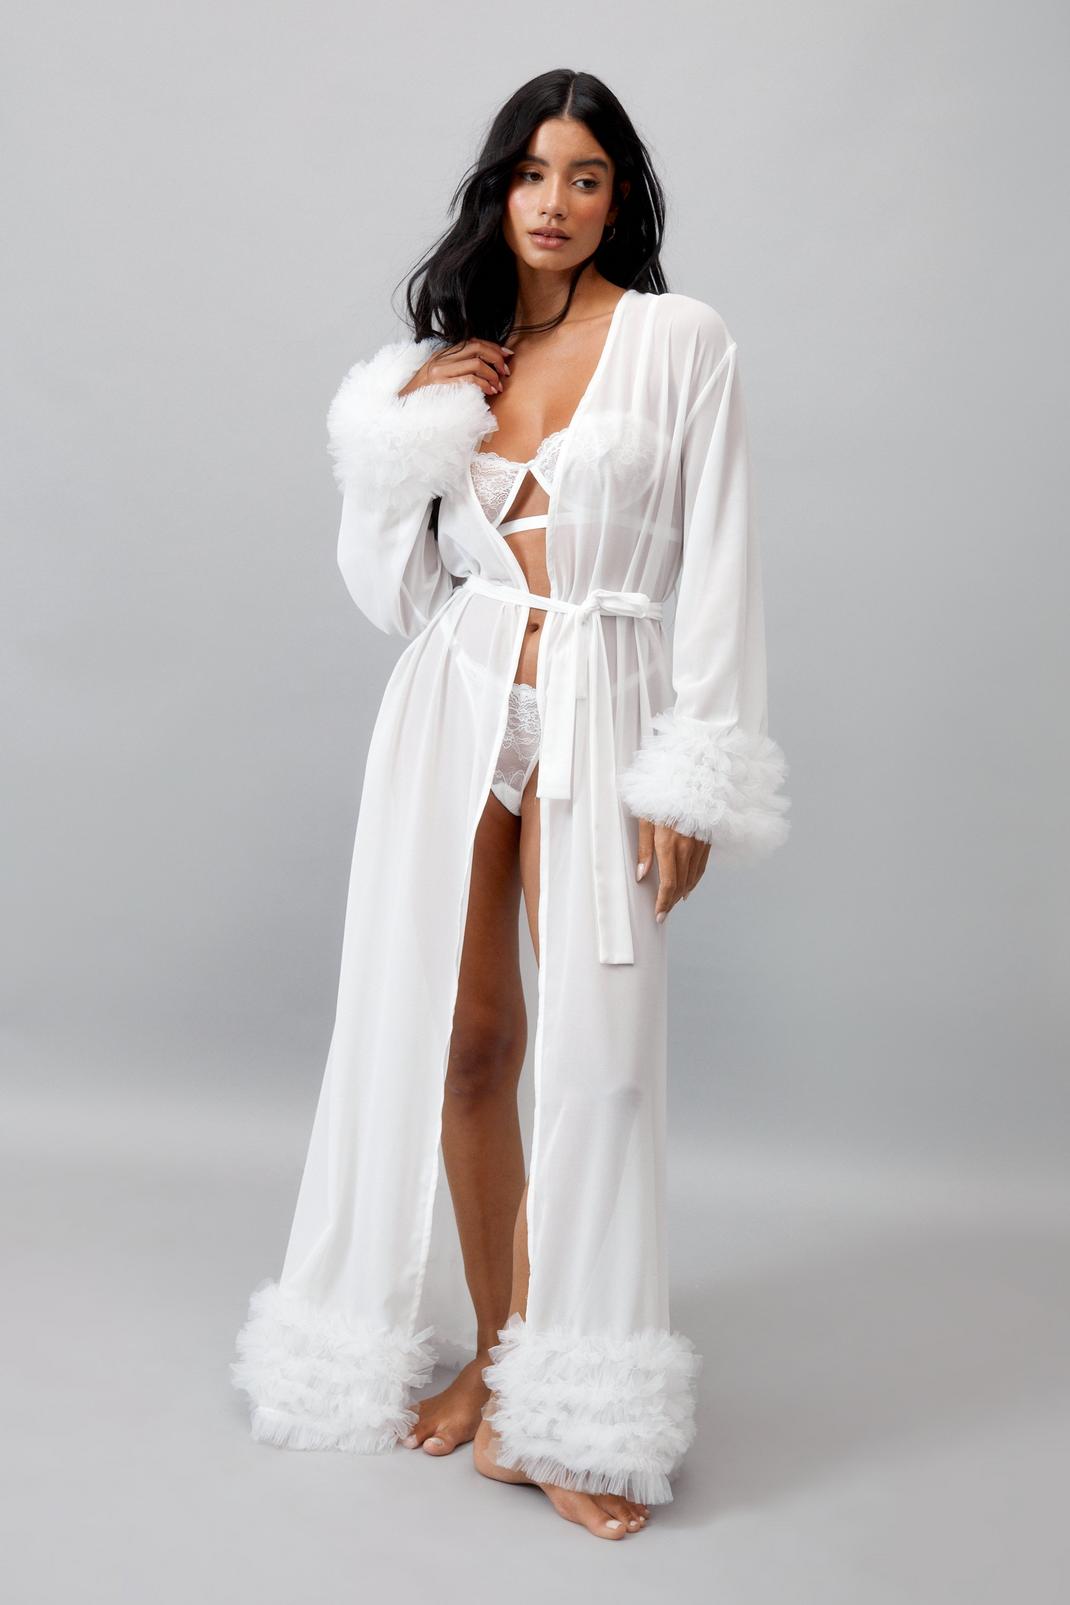 sheer silk robe with feather trim - 100% silk chiffon bridal